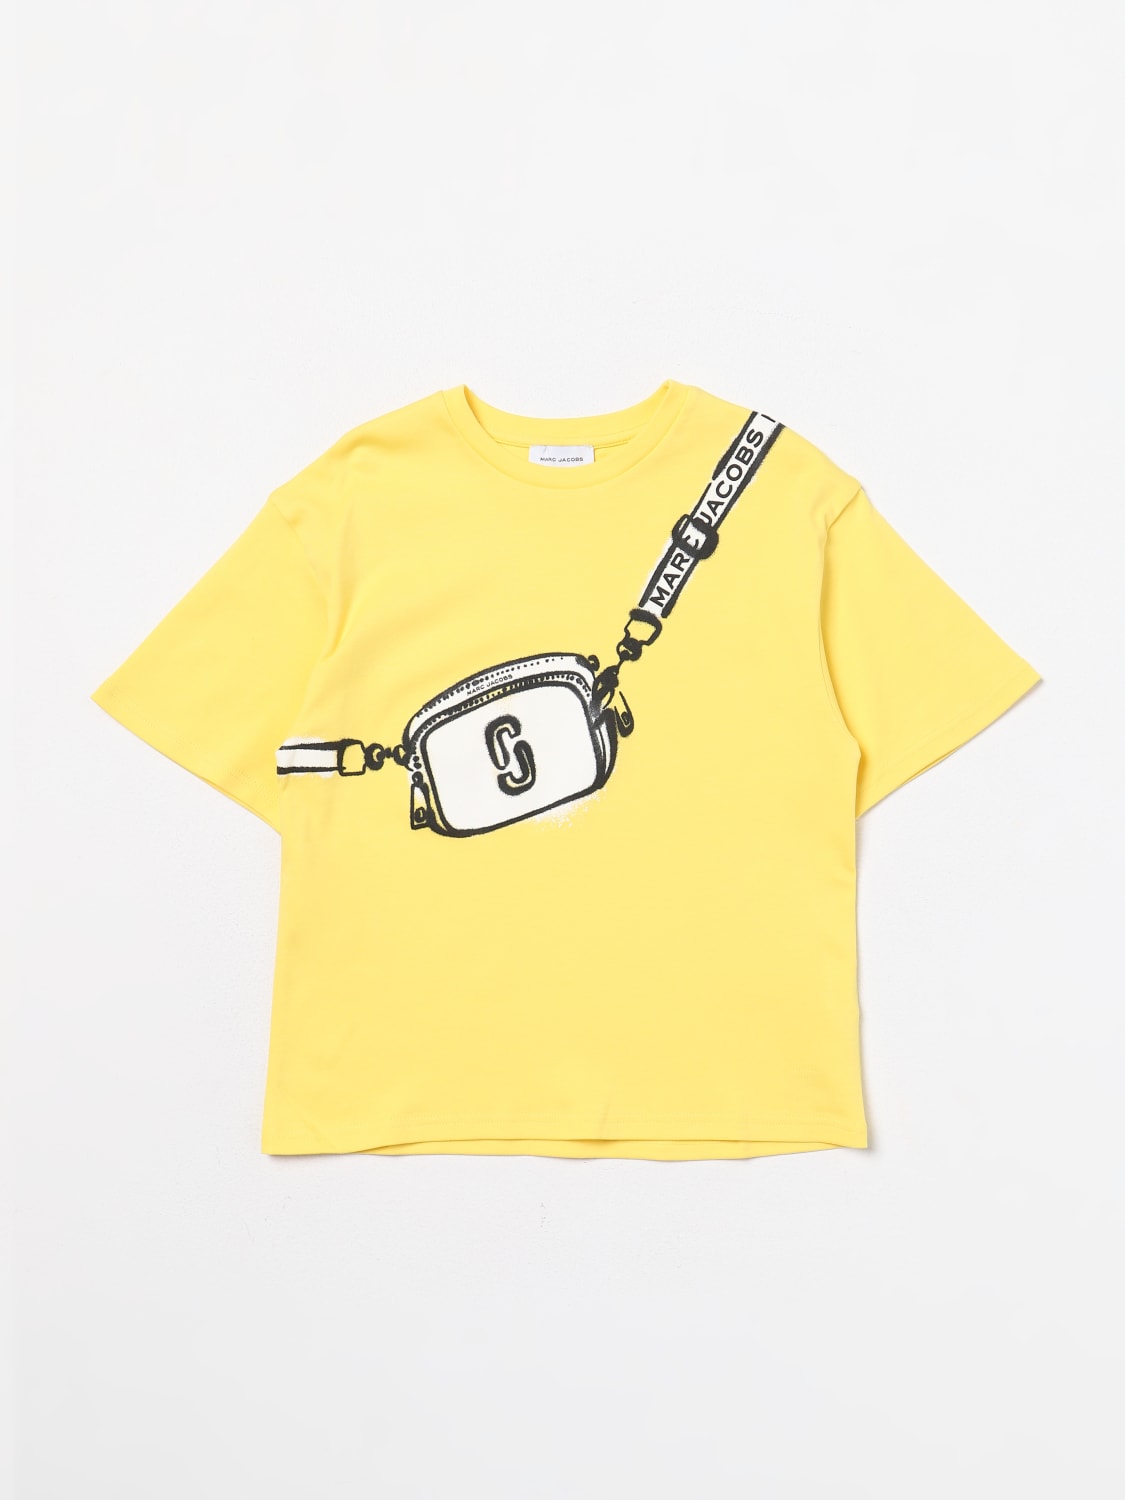 LITTLE MARC JACOBS: T-shirt kids - Yellow | Little Marc Jacobs t-shirt  W60207 online at GIGLIO.COM